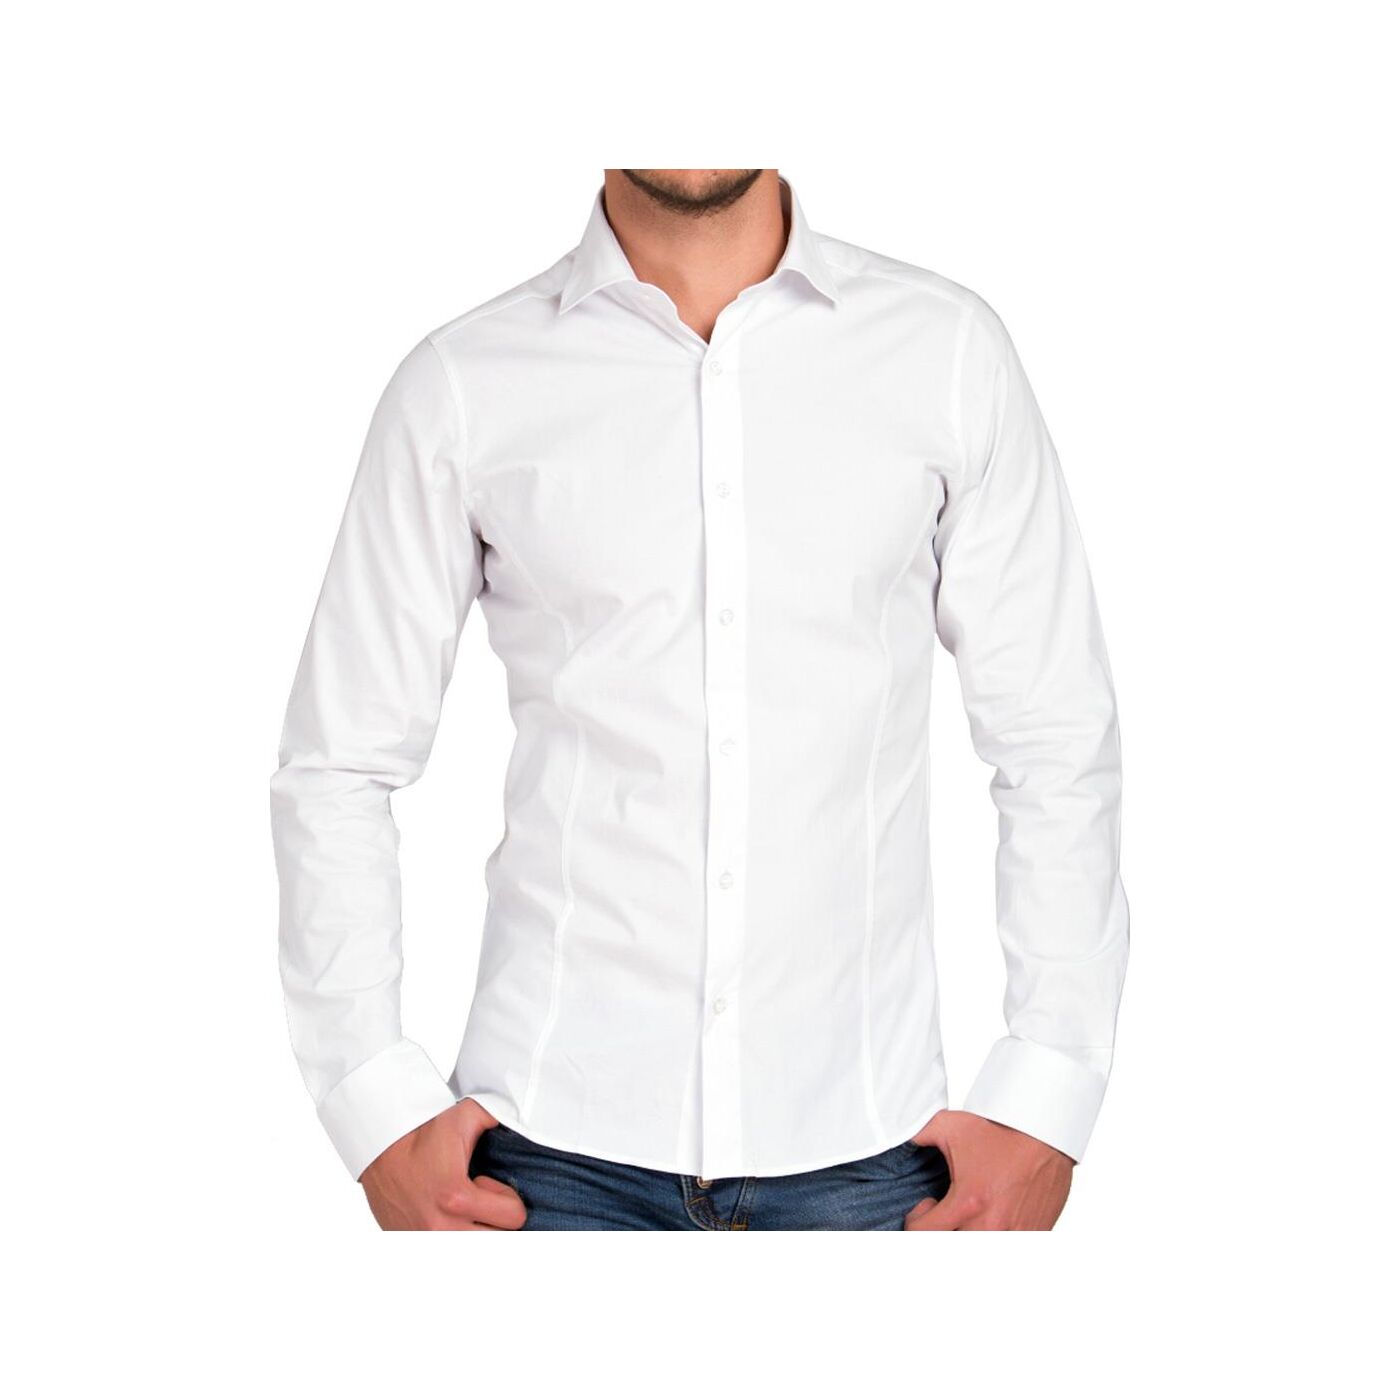 Red - Slim 34,90 € Langarm Design R, R-2111A Bridge Herren Fit Basic Weiß Hemd